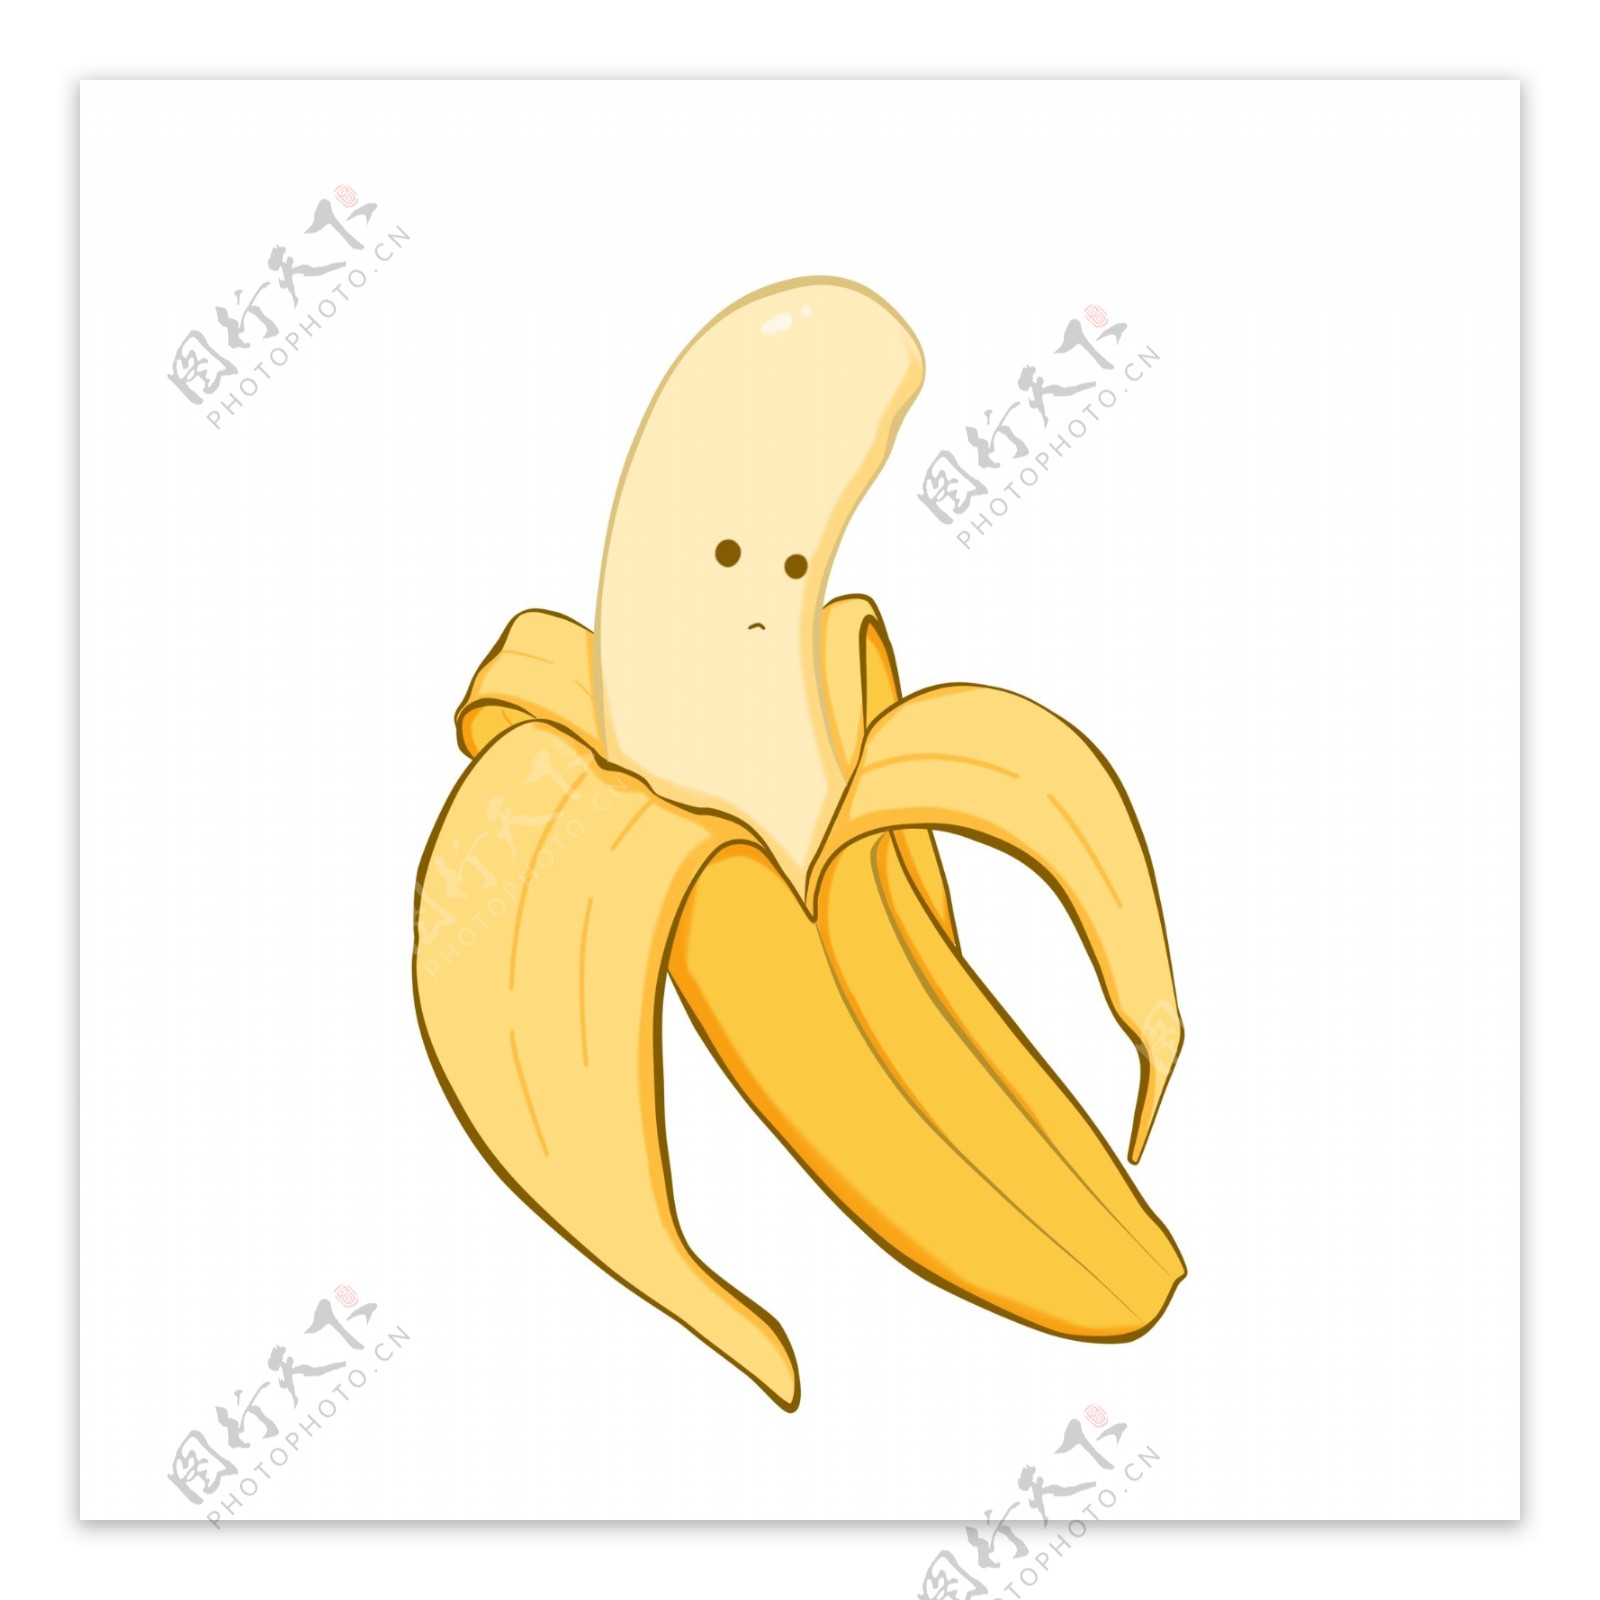 风格手绘水果香蕉